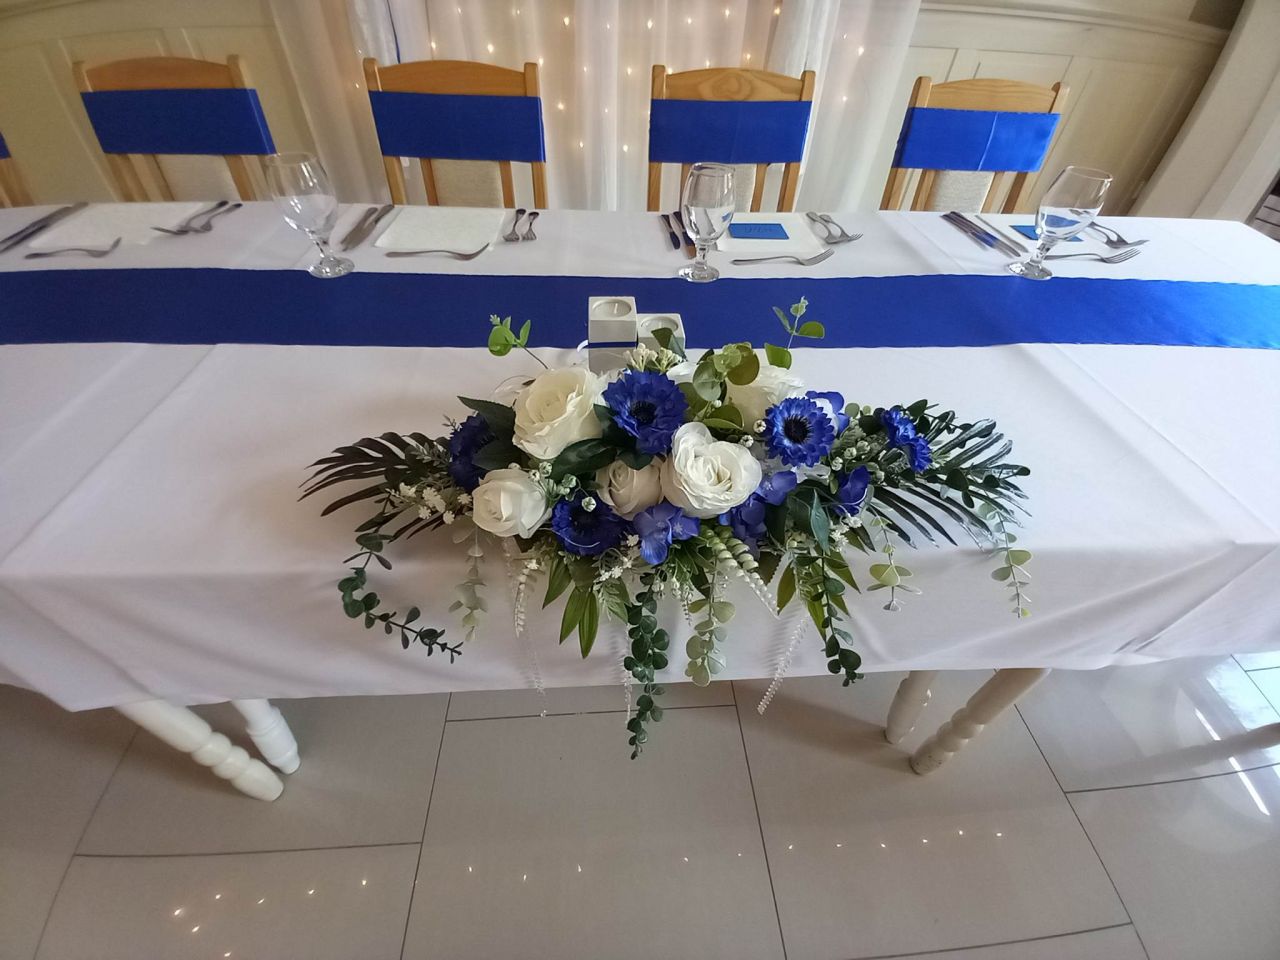 Esküvői főasztal dísz fa dobozban kék-fehér színben leddel